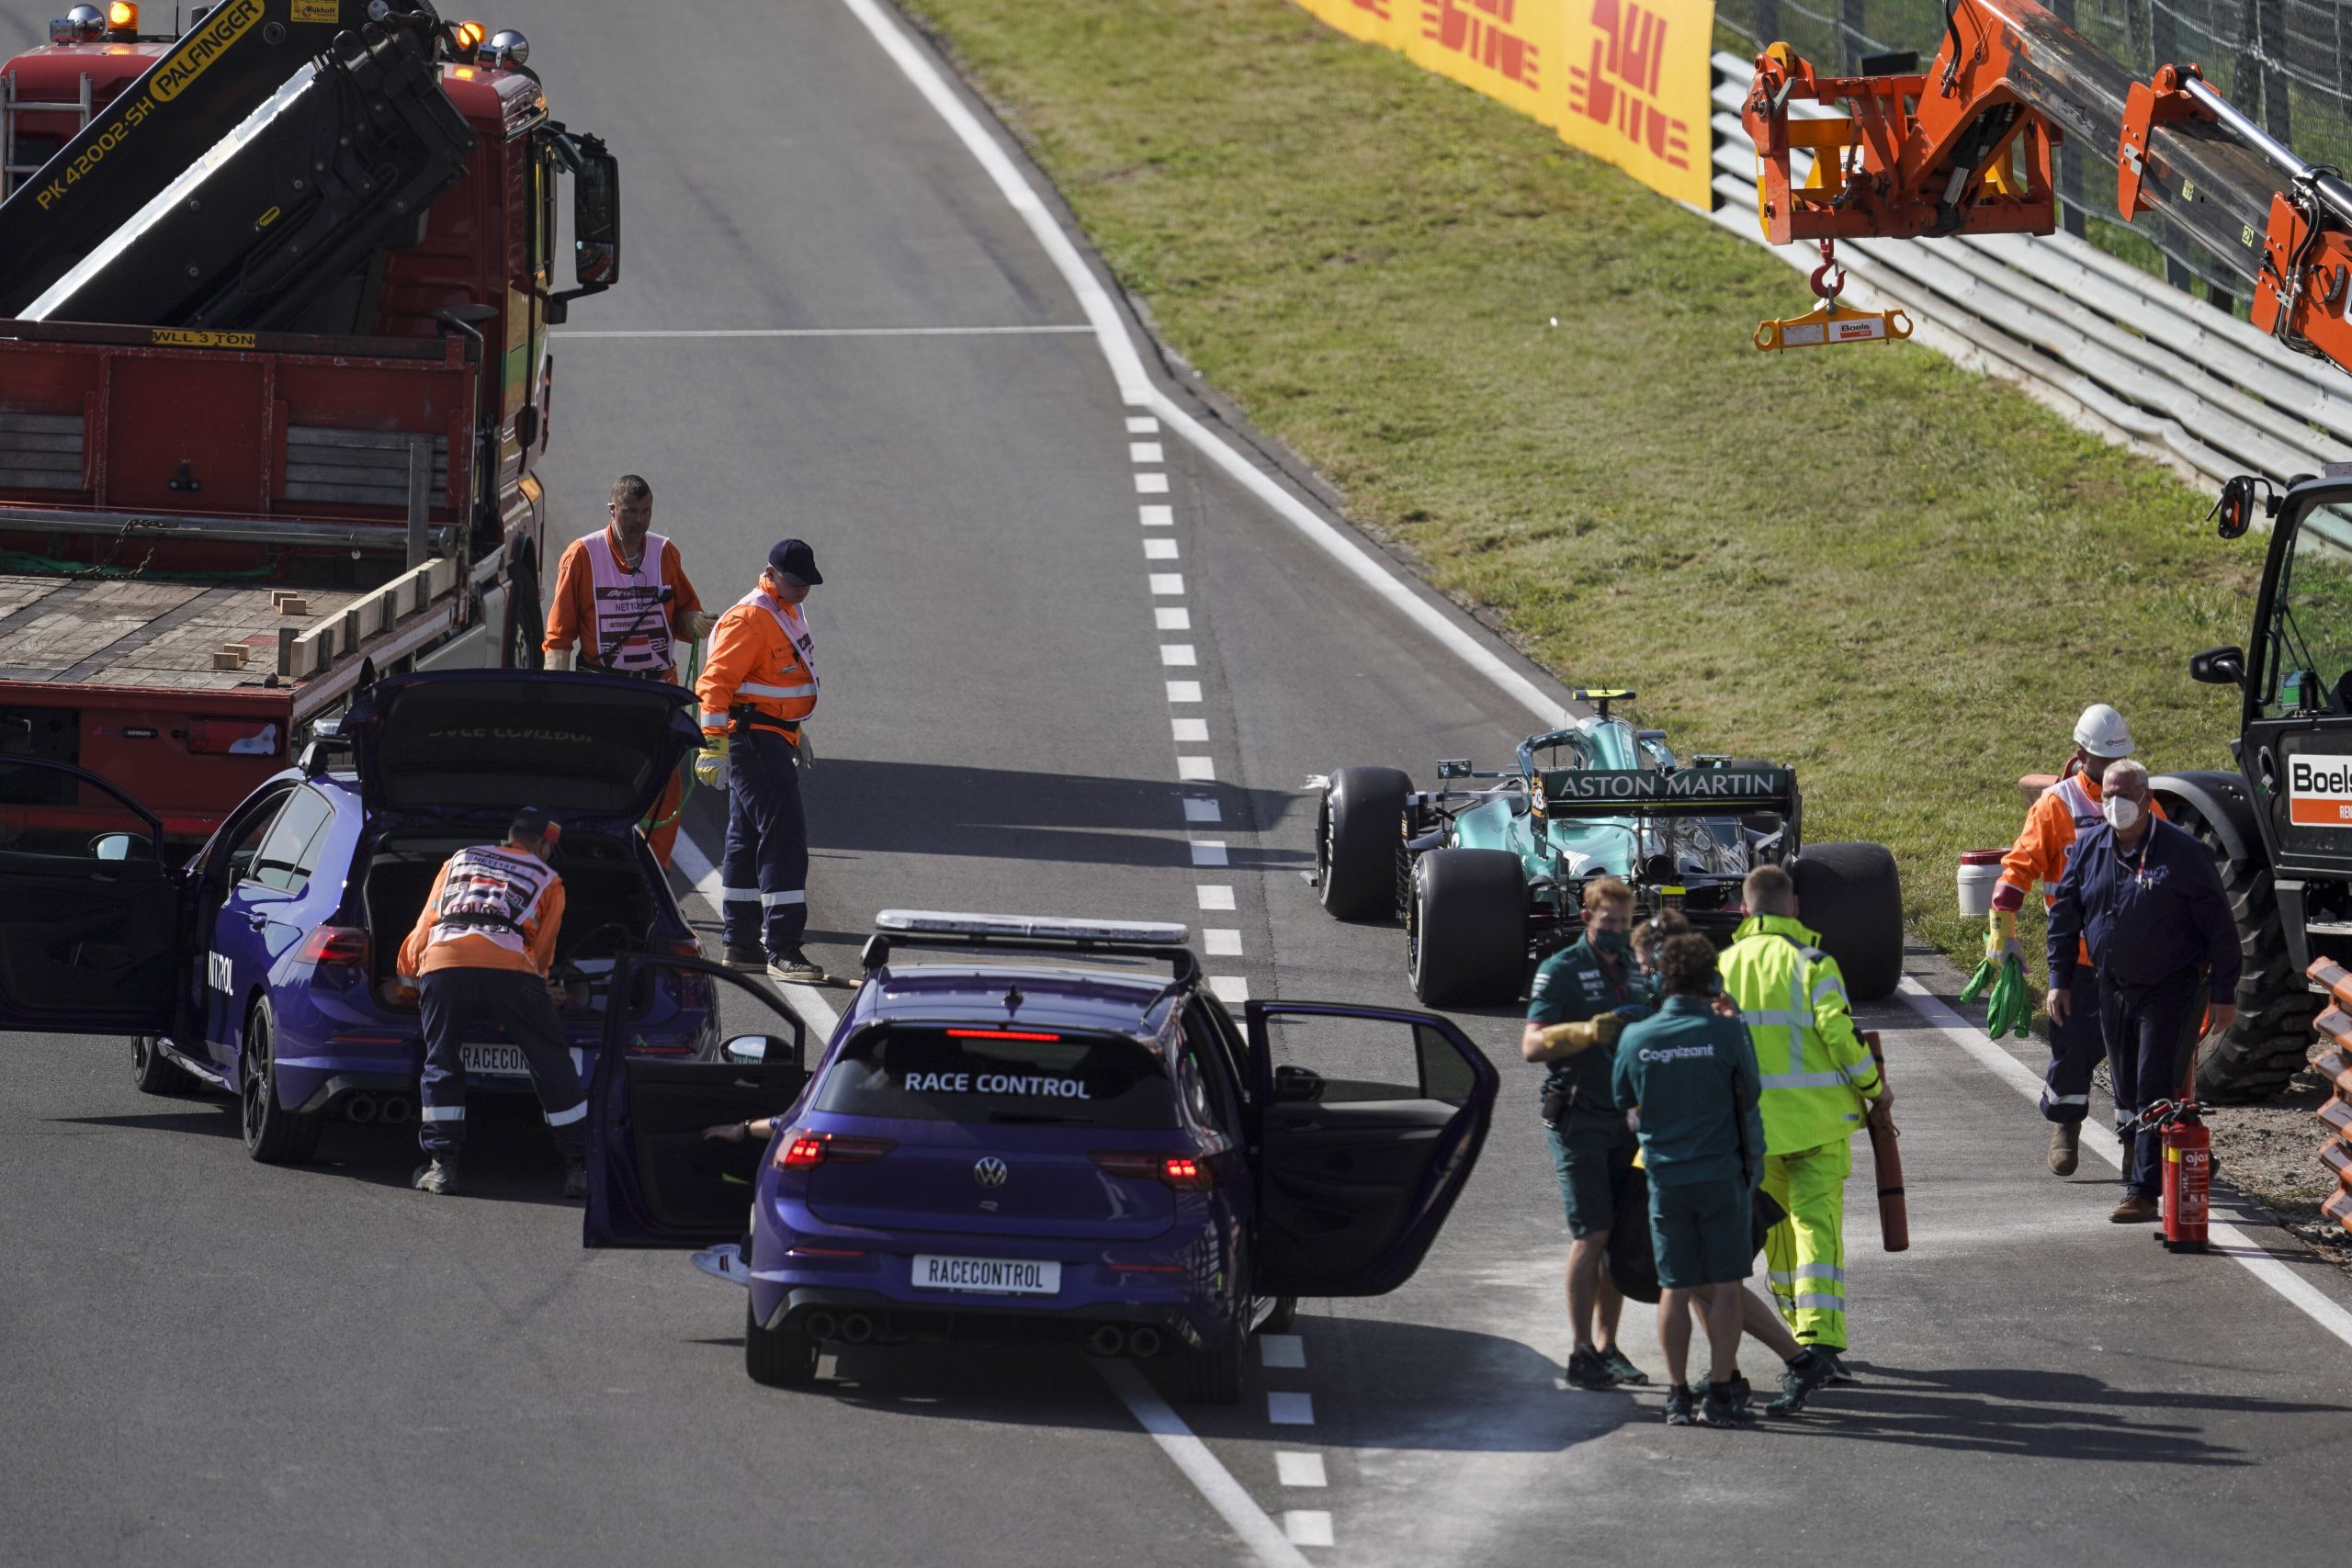 Motorschaden beim Aston Martin im 1. freien Training. Als ein Brand aufkeimte, griff Sebastian Vettel selbst zum Feuerlöscher